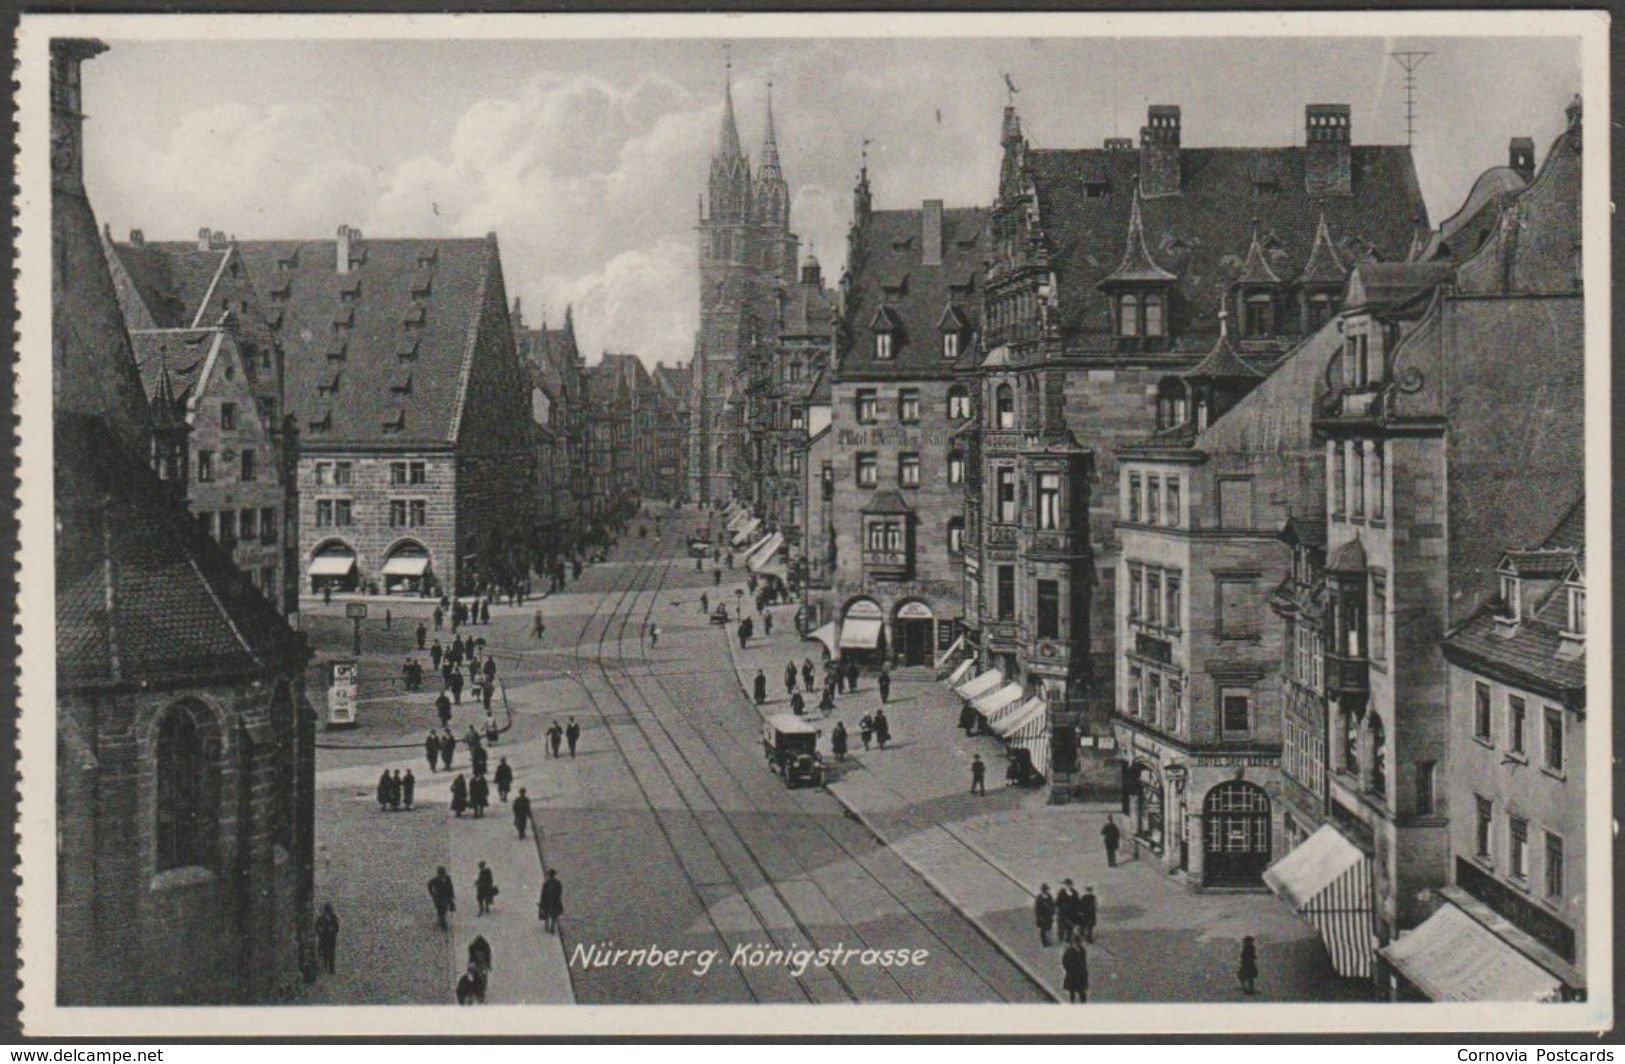 Riffelmacher AK Ludwig - Nürnberg, c.1930s Königstrasse, Nuernberg -